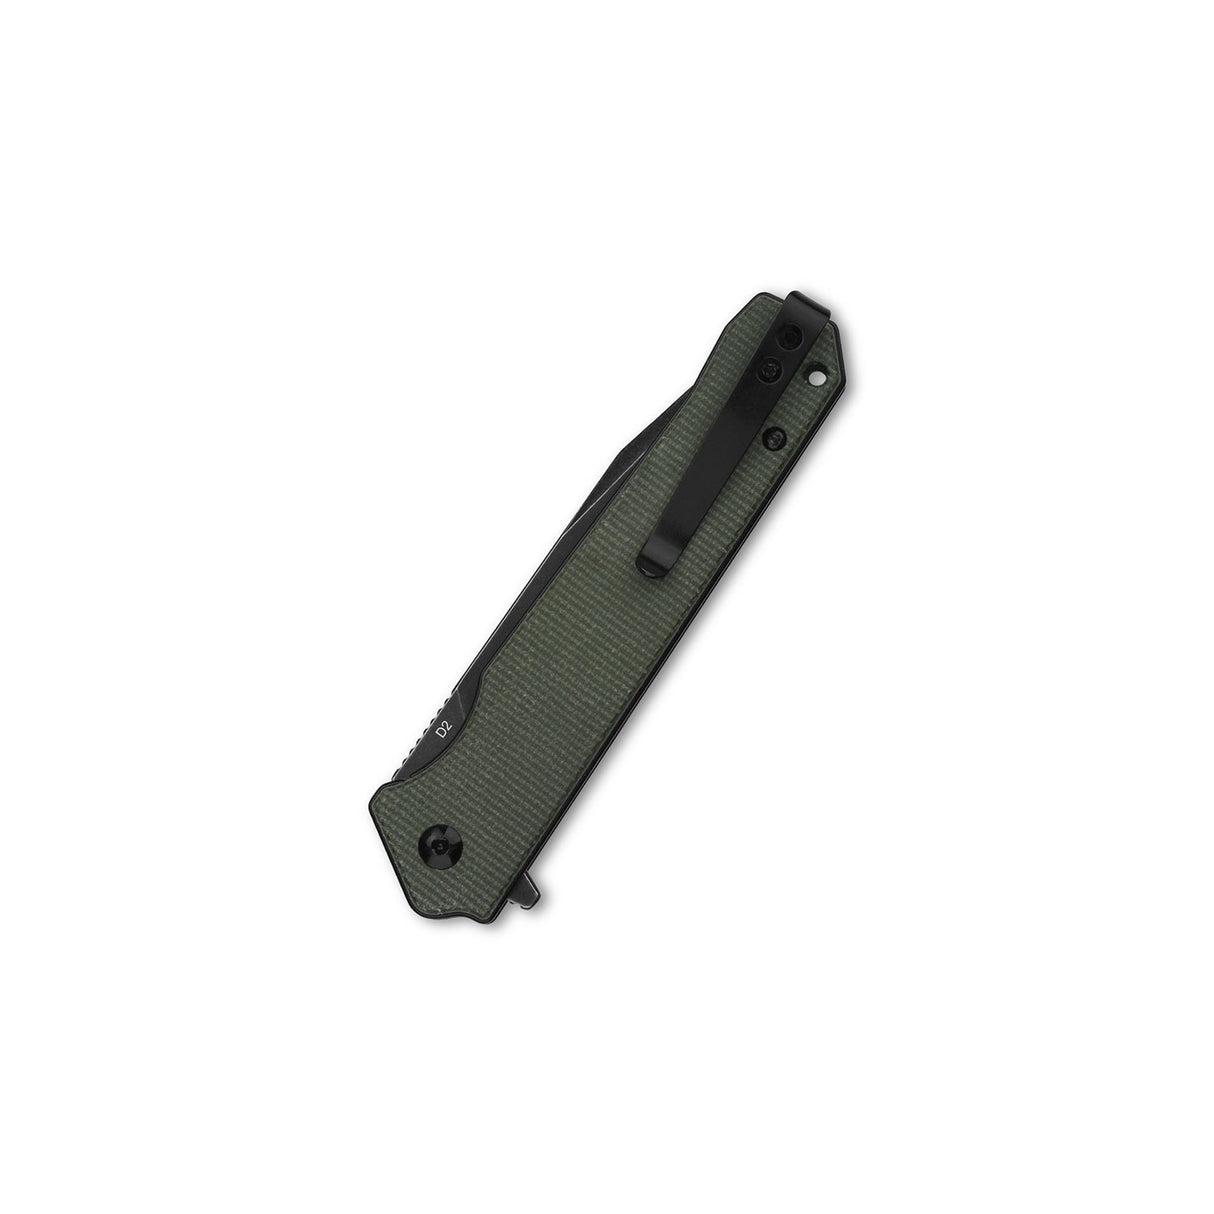 QSP Mamba V2 Liner Lock Pocket Knife D2 Blade Green Micarta Handle